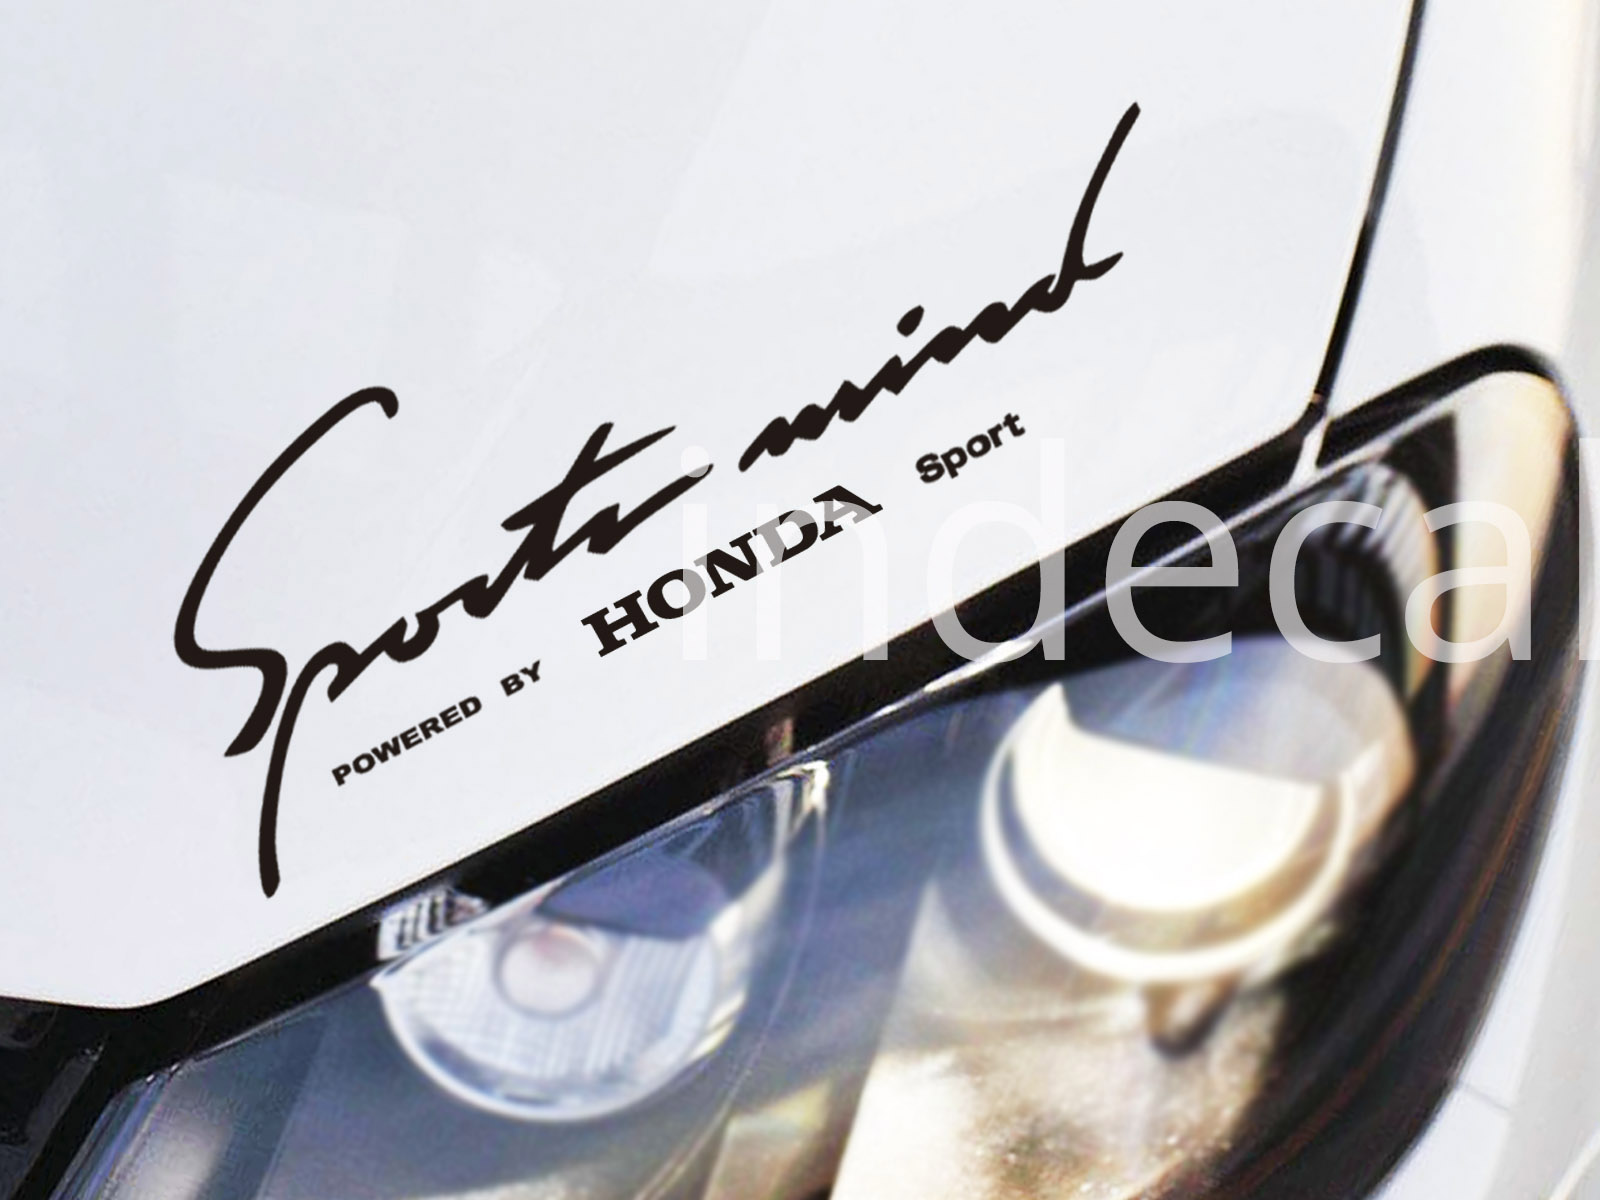 1 x Honda Sports Mind Sticker - Black